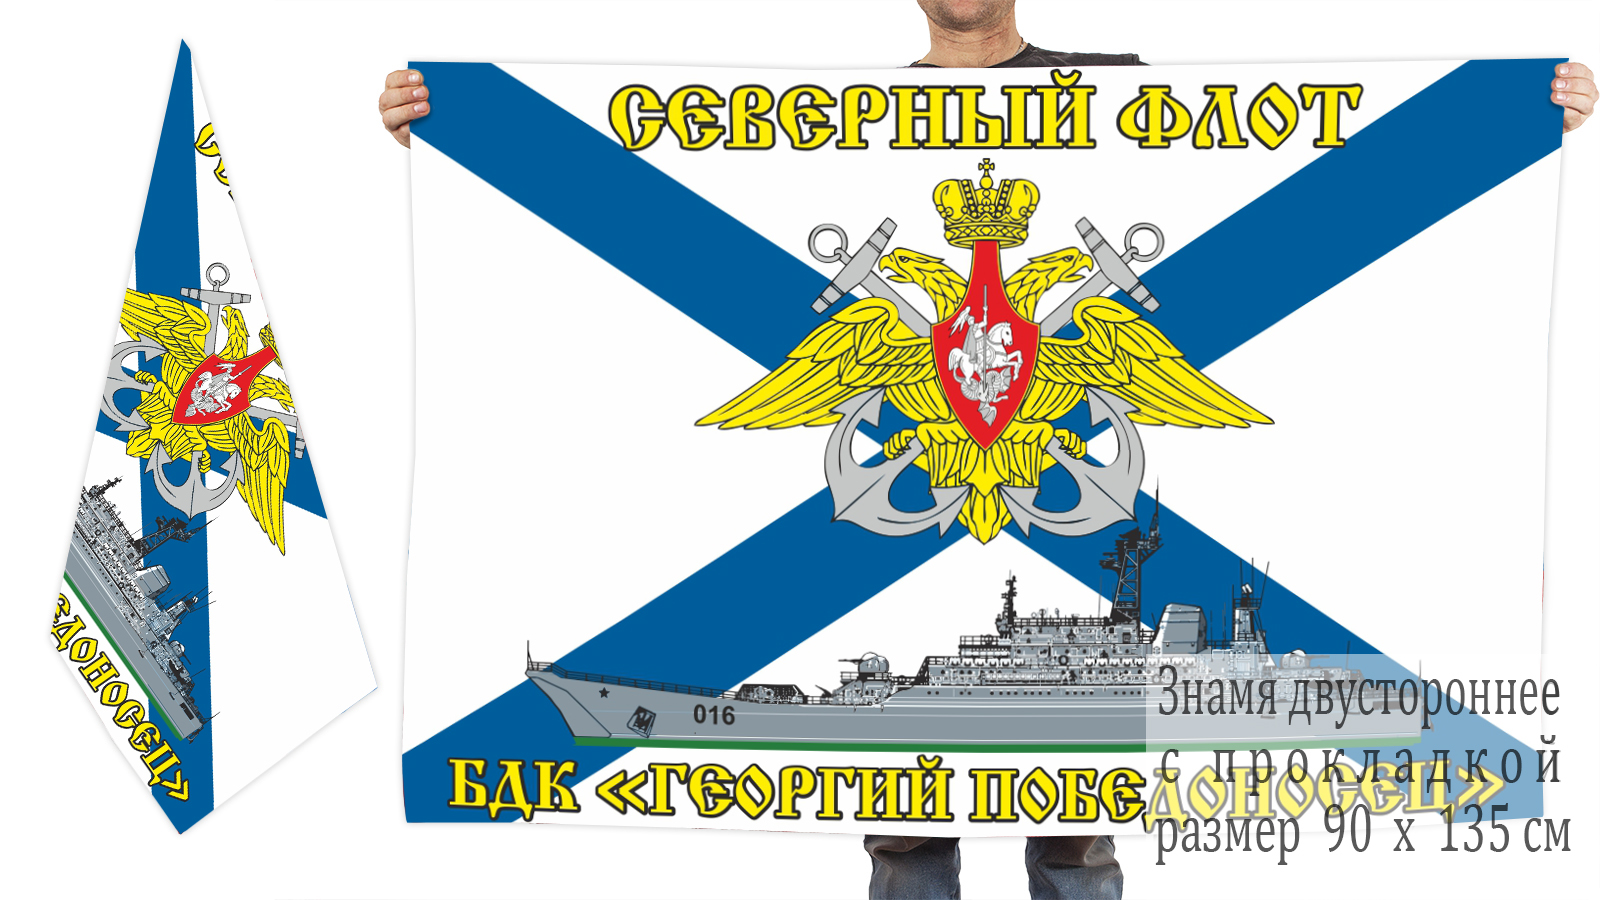 Двусторонний флаг БДК "Георгий Победоносец"